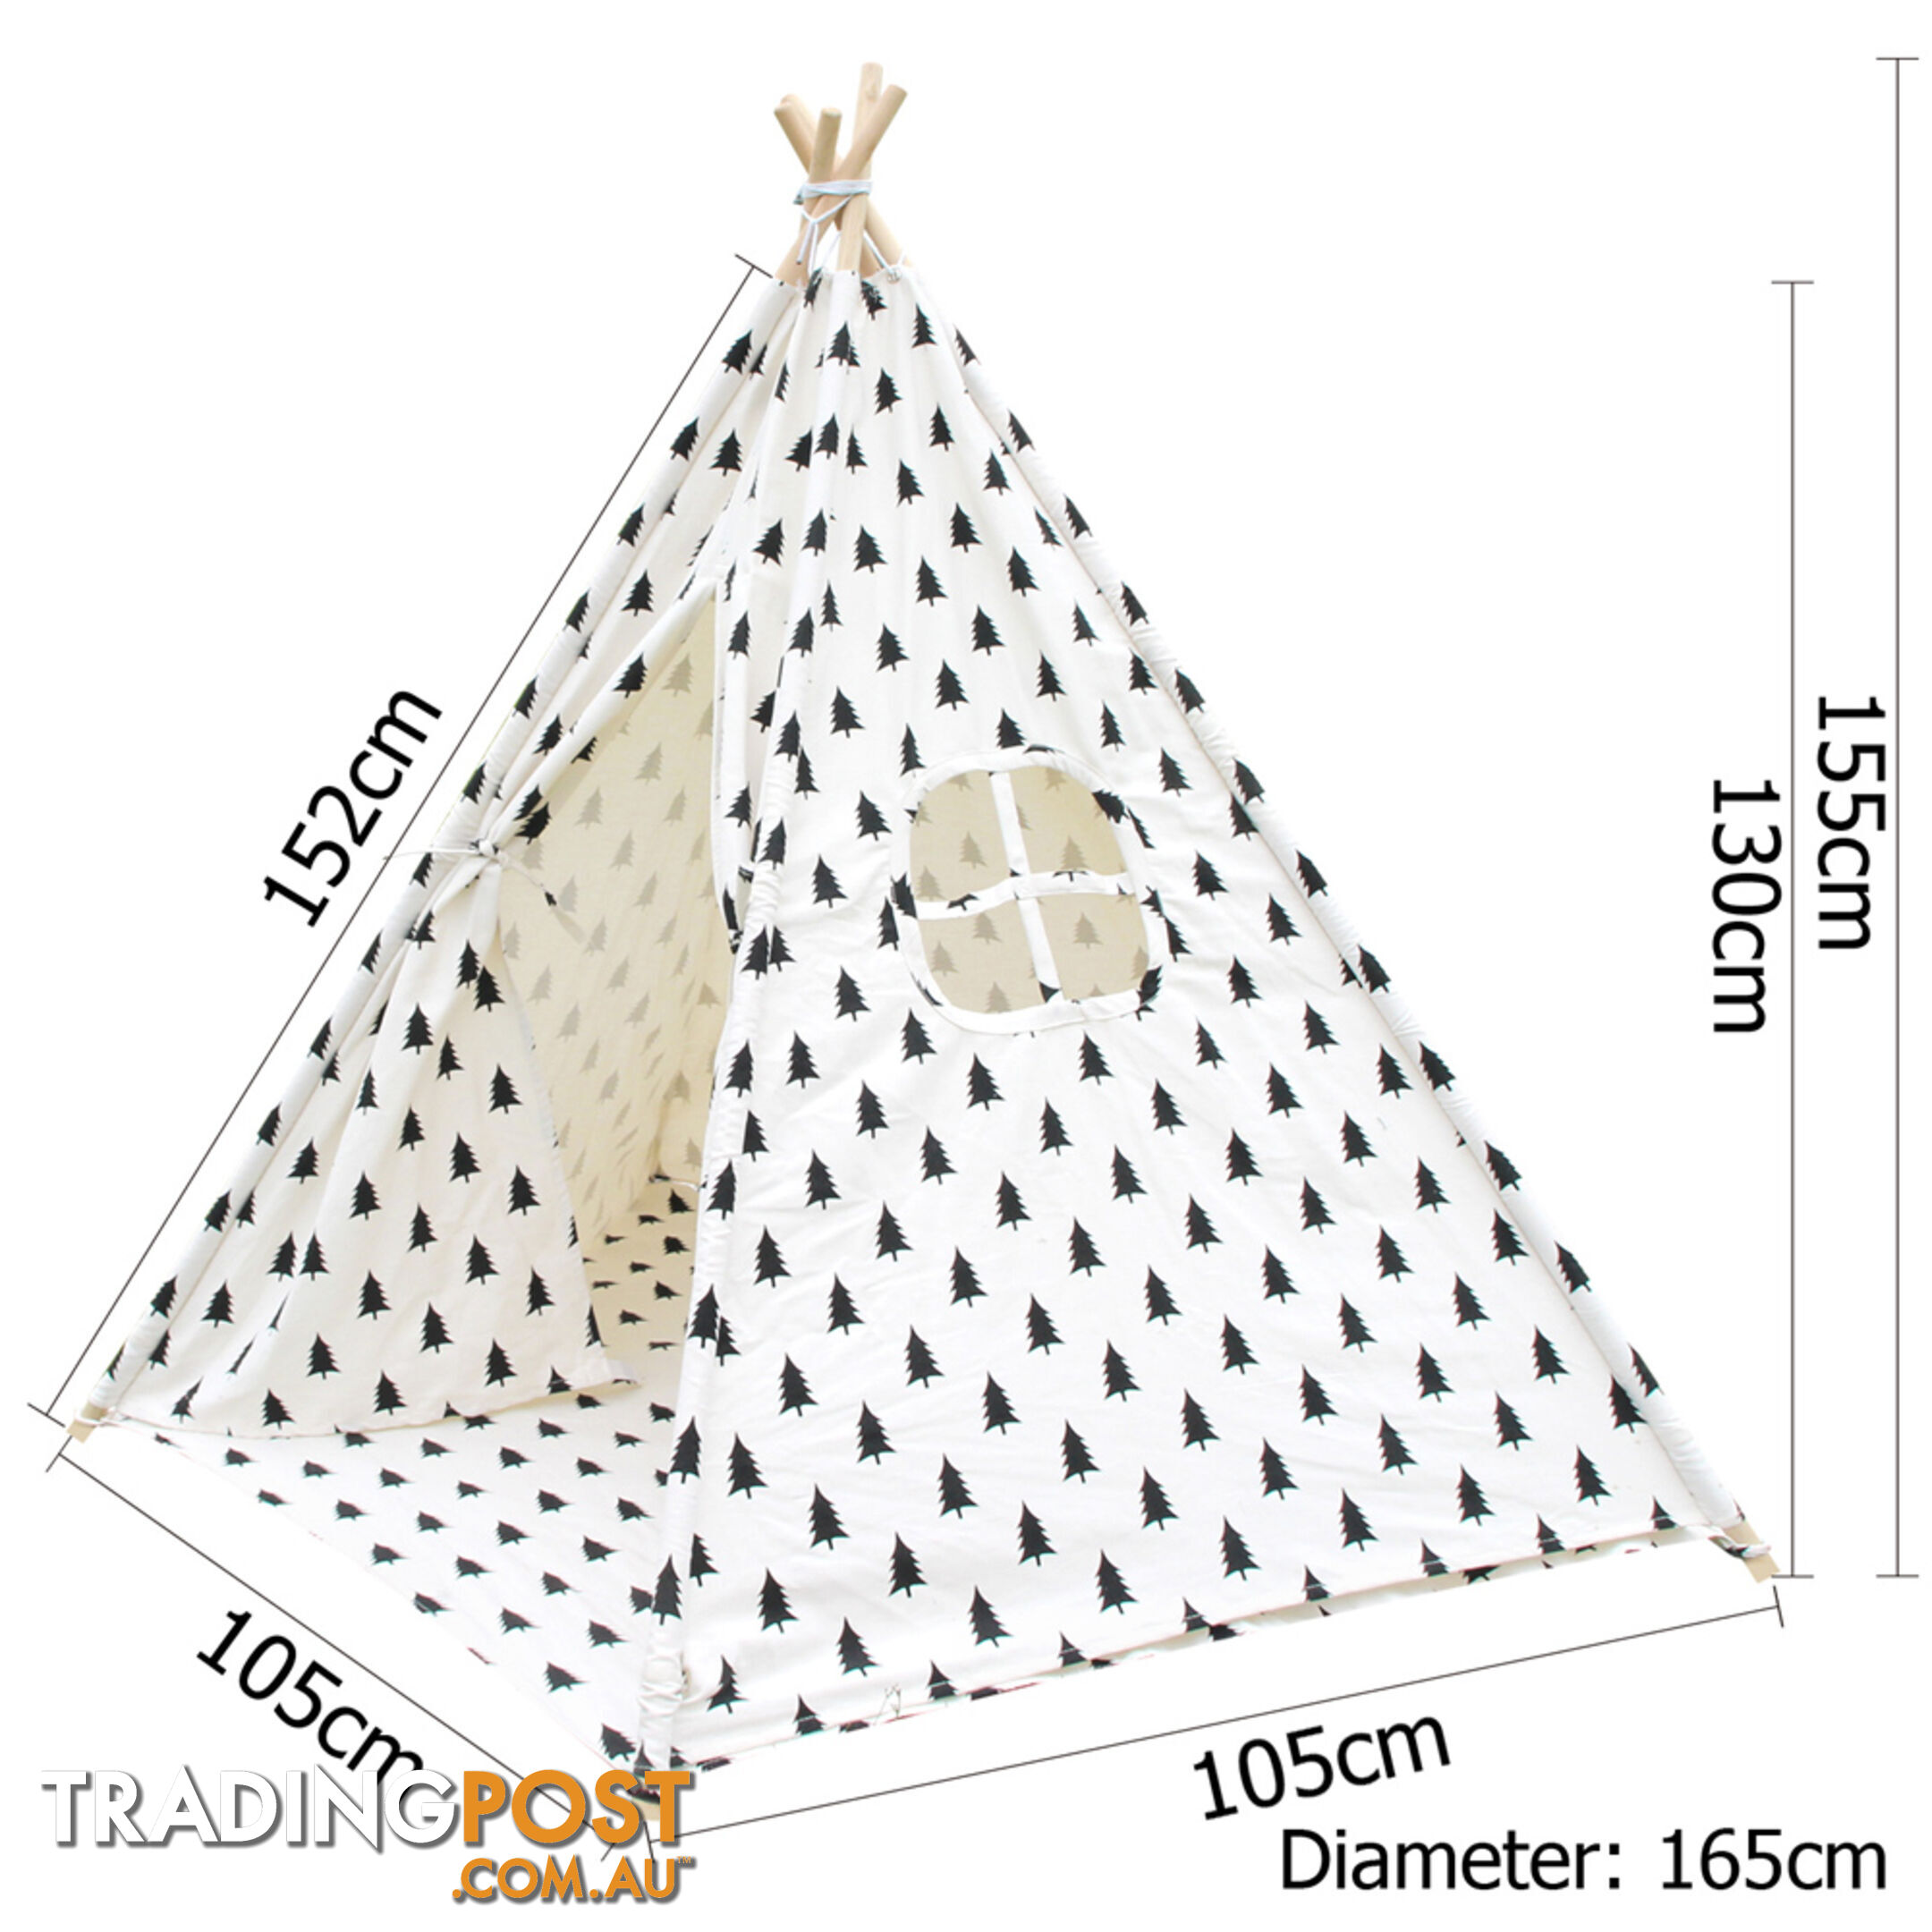 5 Poles Teepee Tent w/ Storage Bag Black White